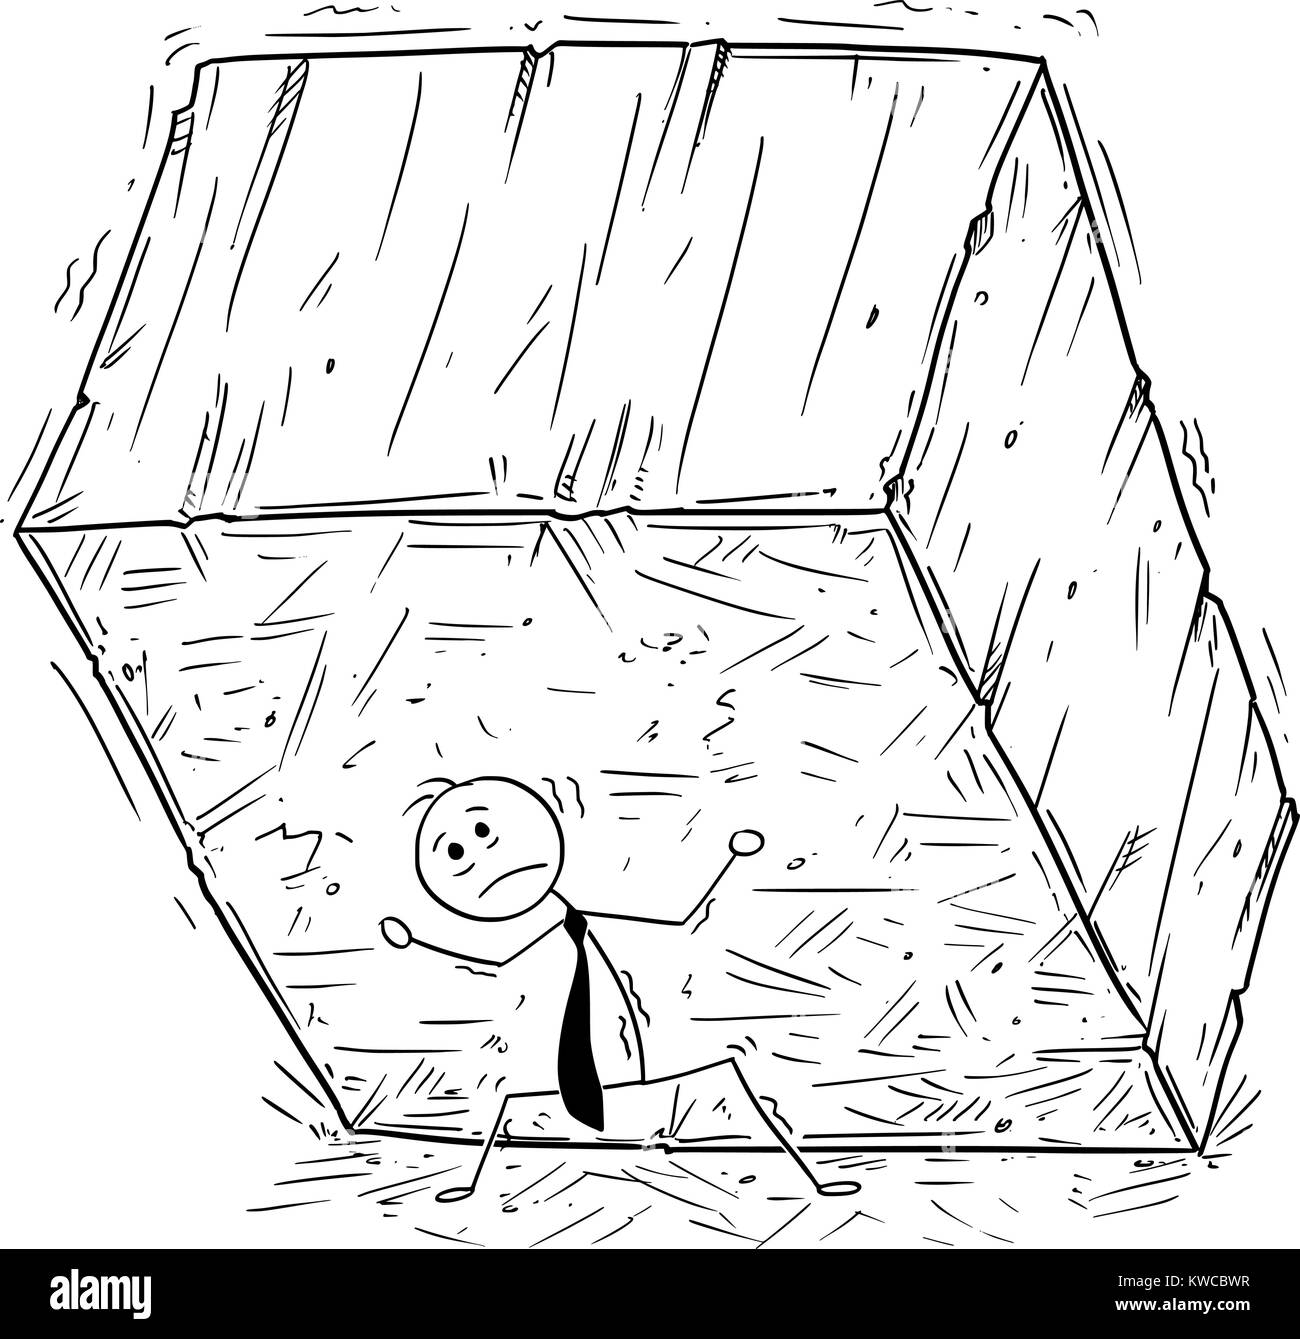 Cartoon stick Mann Zeichnung konzeptuelle Abbildung: Geschäftsmann Durchführung oder Unterstützung von Big Block aus Stein des Rock. Konzept der Business Stress von Ta Stock Vektor